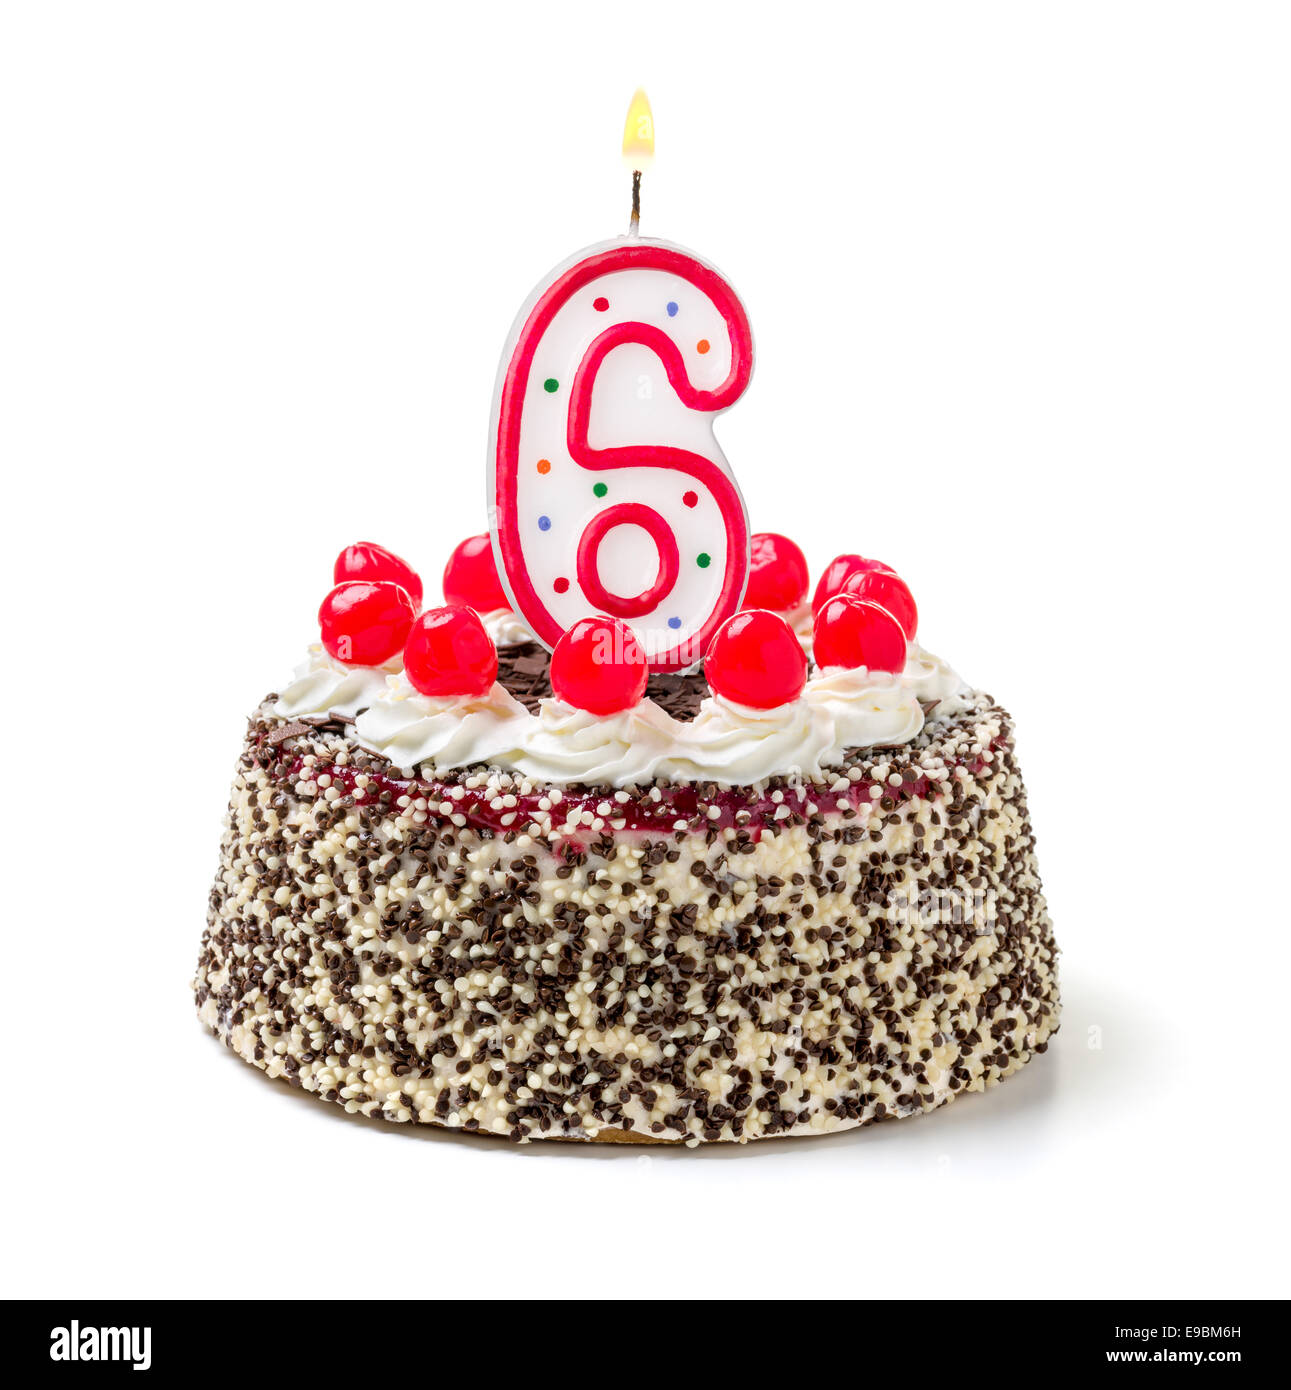 Bon anniversaire mon blog : 6 ans !!! djà ! - Beatricote